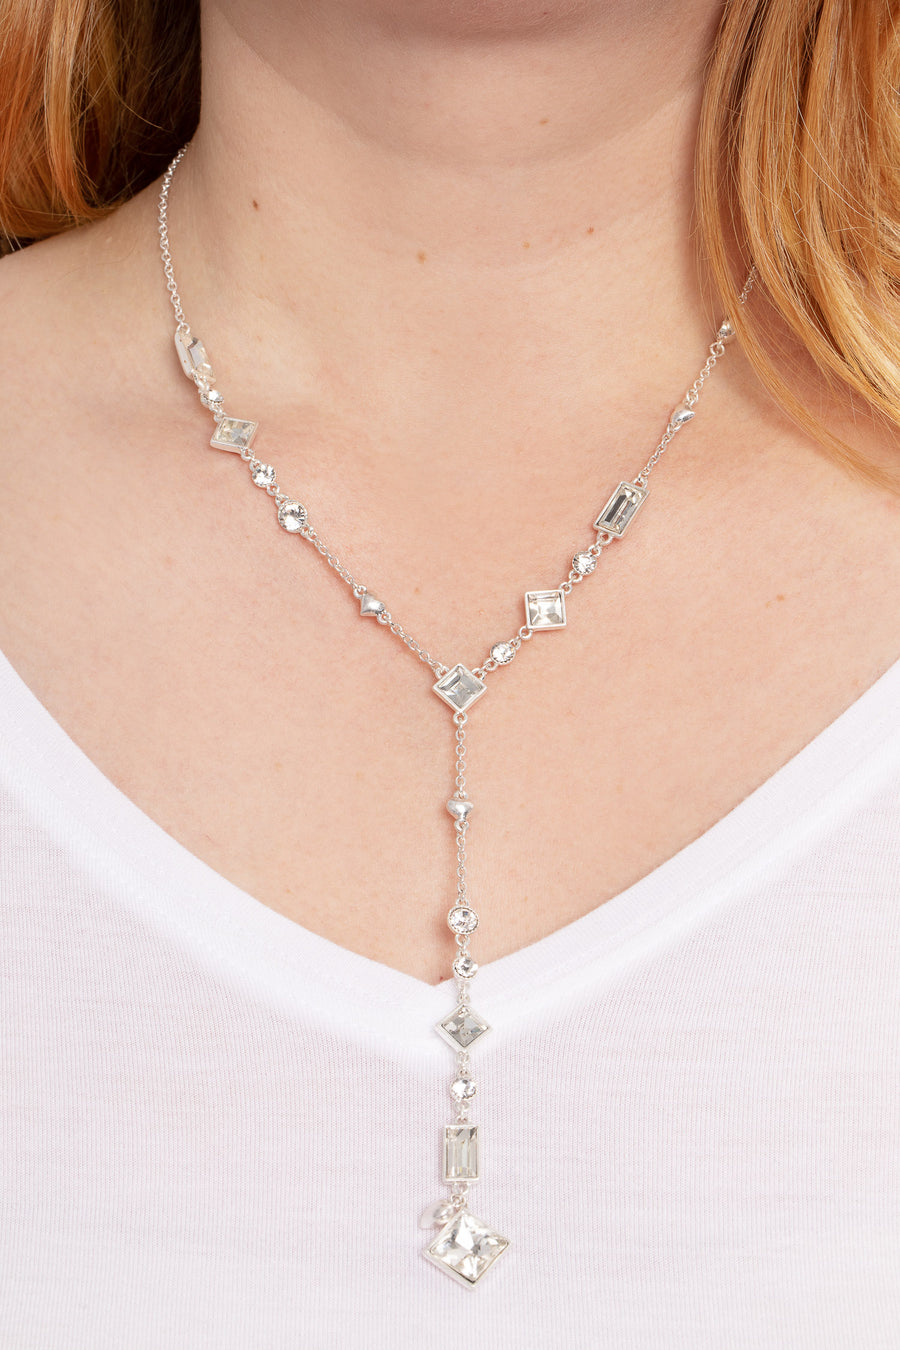 Bibi Bijoux Silver Vintage Crystal Necklace